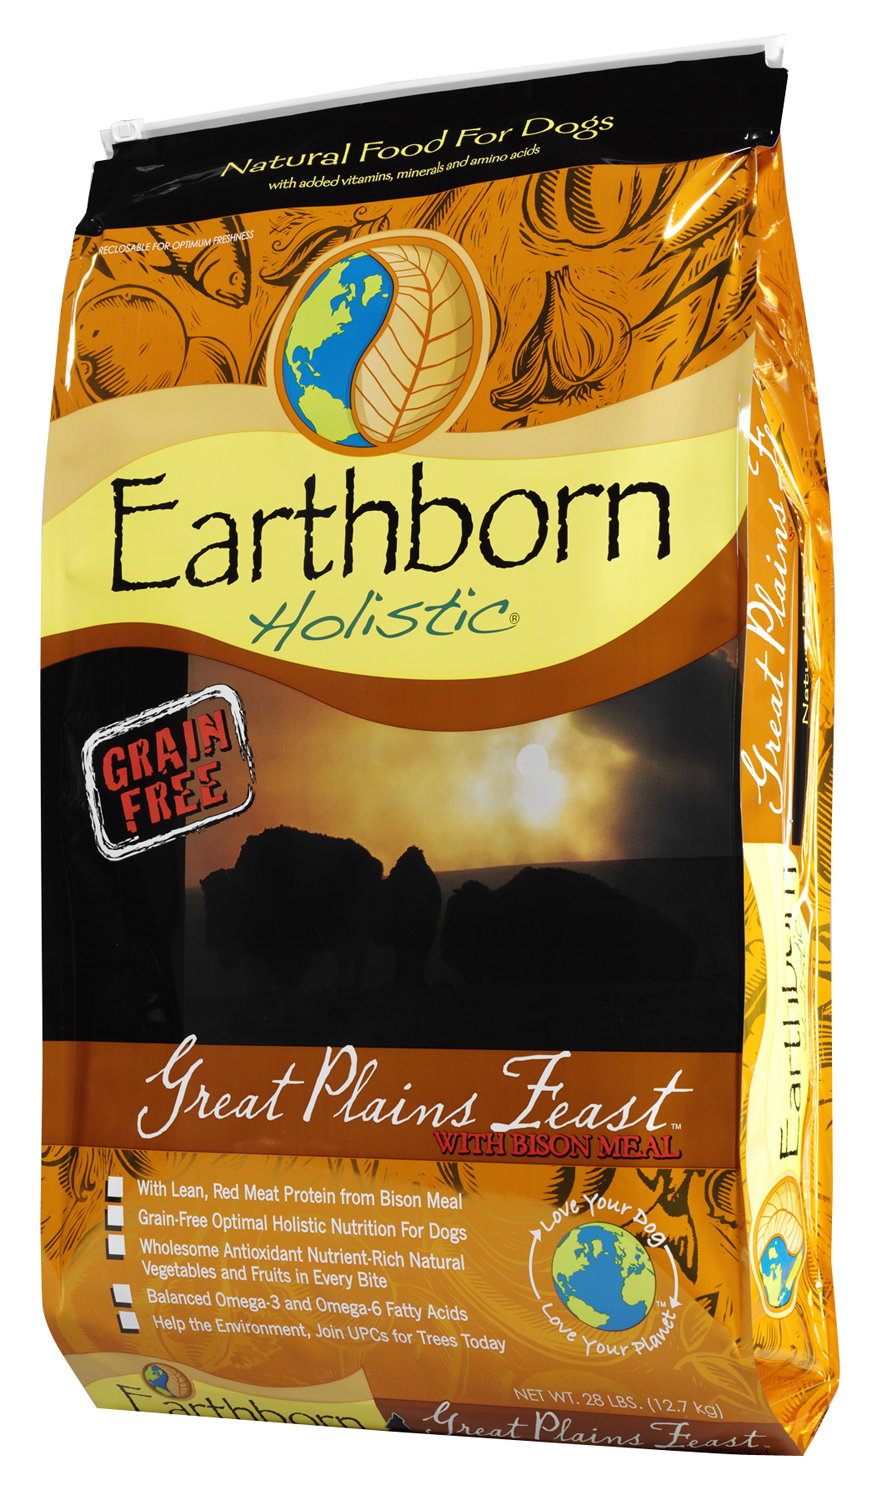 Earthborn Holistic Great Plains Feast, 25 lbs